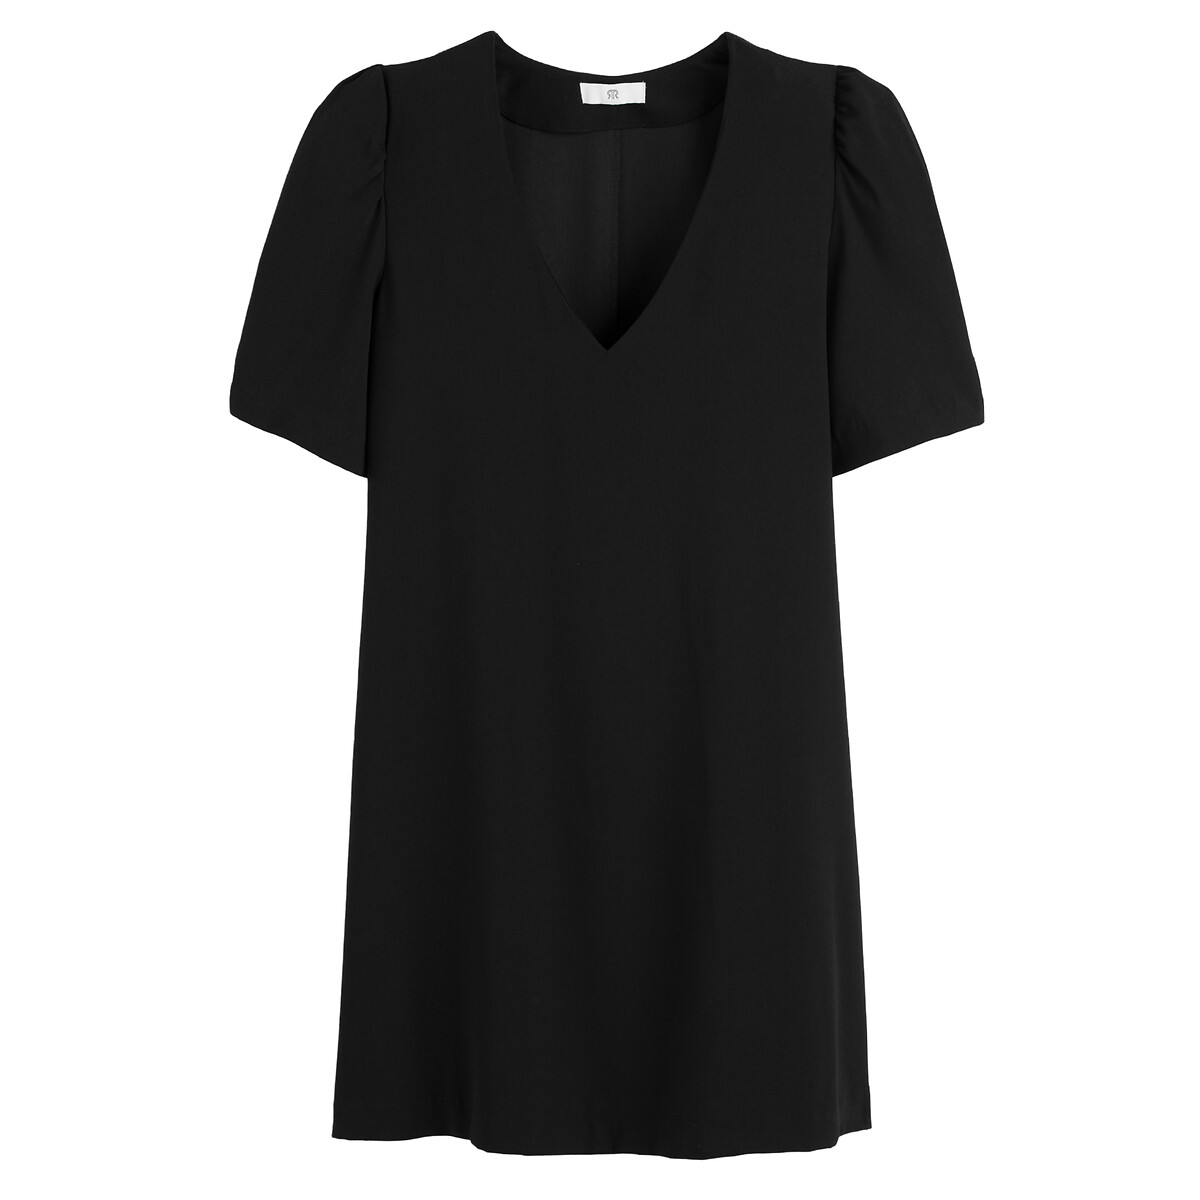 Платье Короткое с V-образным вырезом короткие рукава 56 черный LaRedoute, размер 56 - фото 5